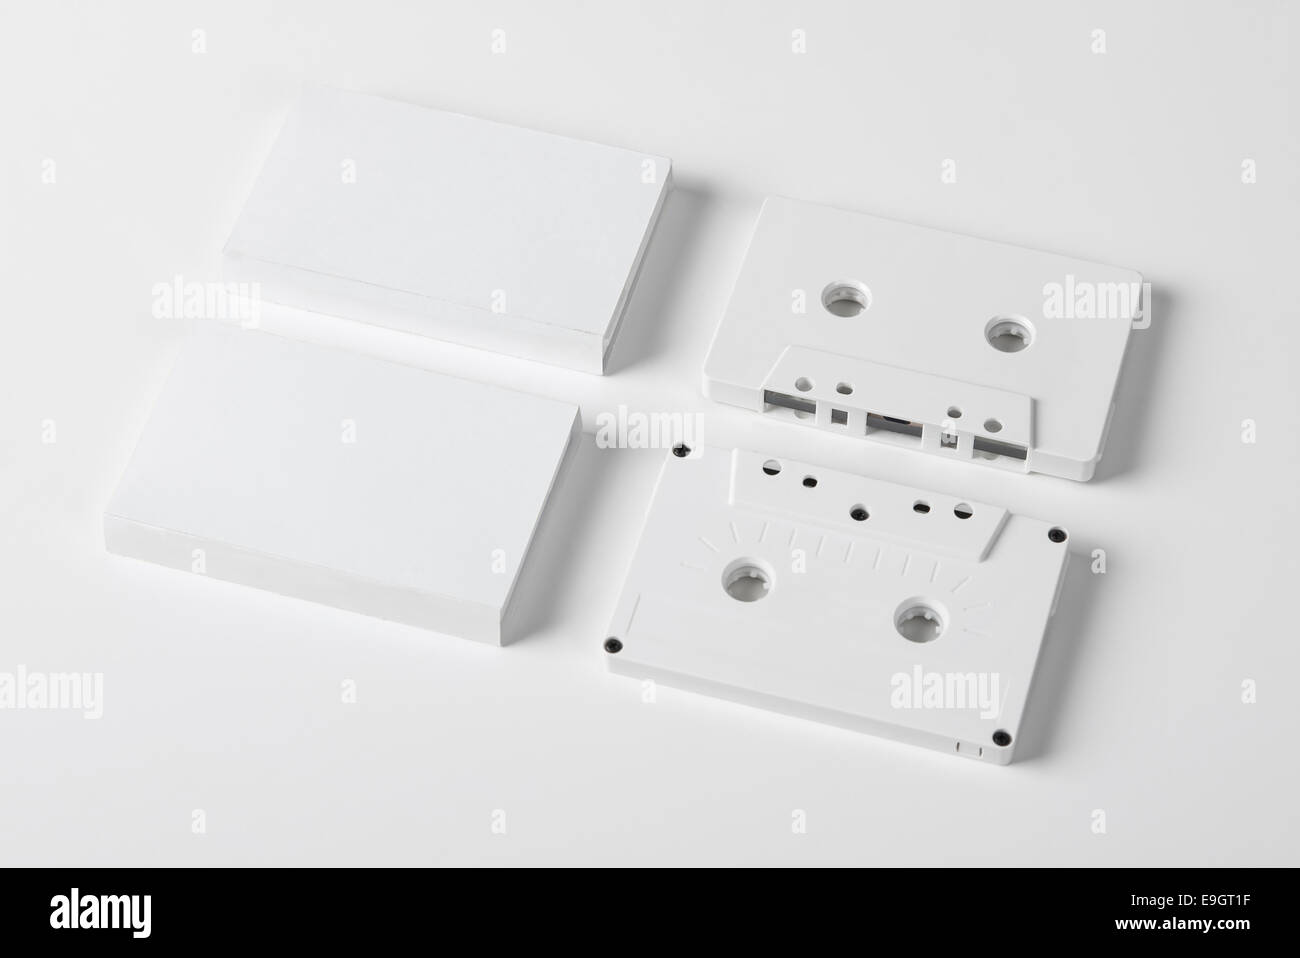 Une série de cassettes audio vierges sur fond blanc avec des emballages vides Banque D'Images